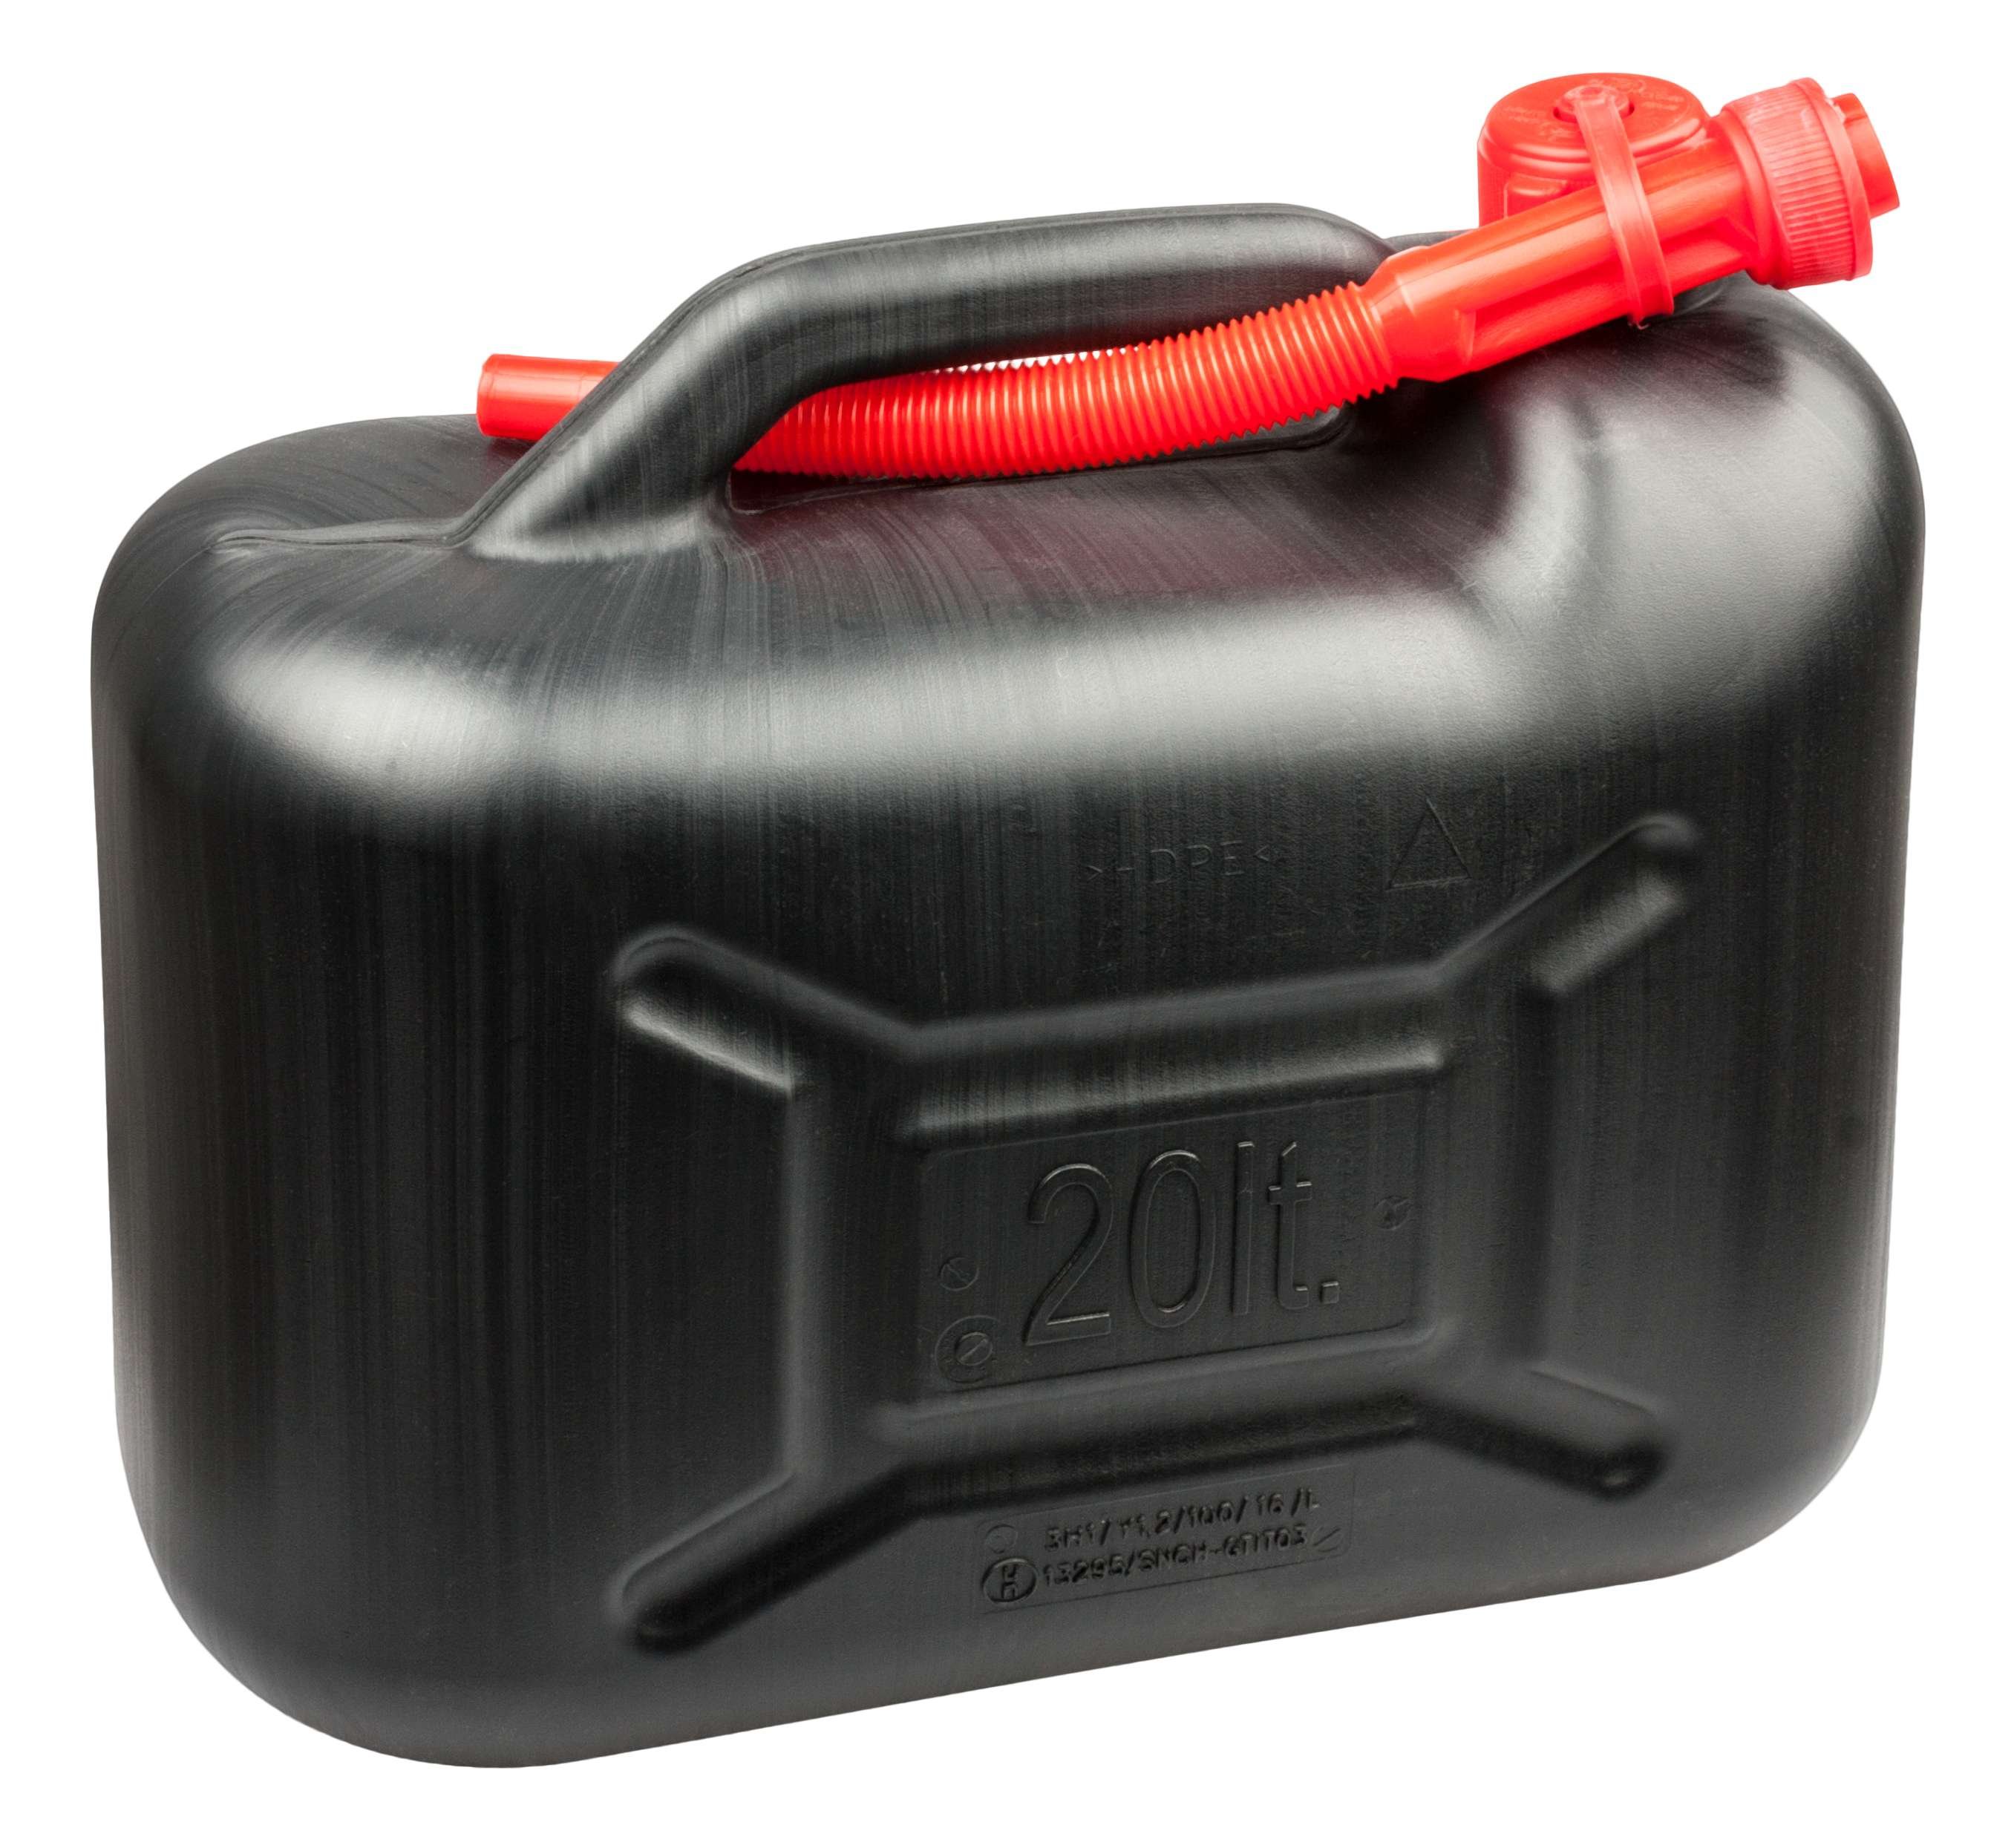 Benzinkanister 20 Liter - UN-geprüft mit Sicherheitsverschluss